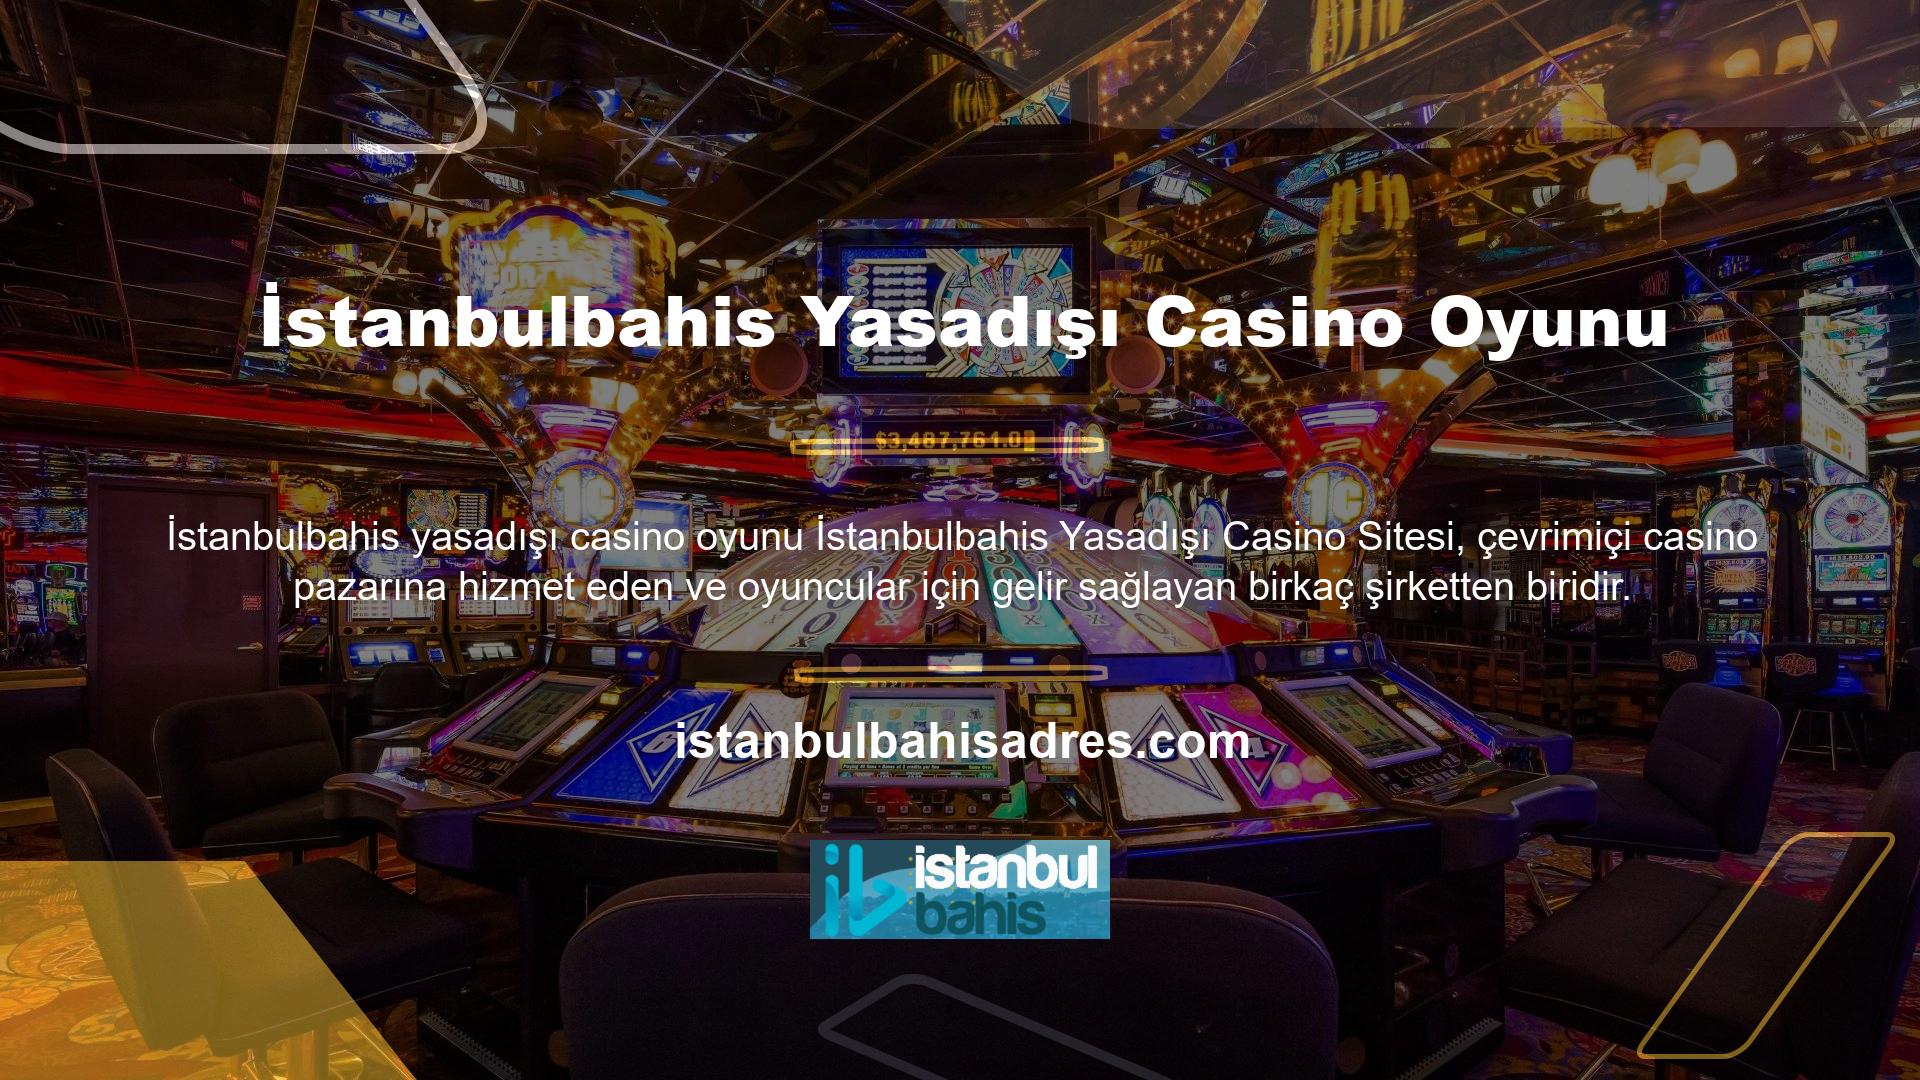 Bu bahis sitesi, hemen hemen her casino tutkununun ihtiyaçlarını karşılayan içerik sunan, canlı ve casinoda lider bir internet sağlayıcısıdır